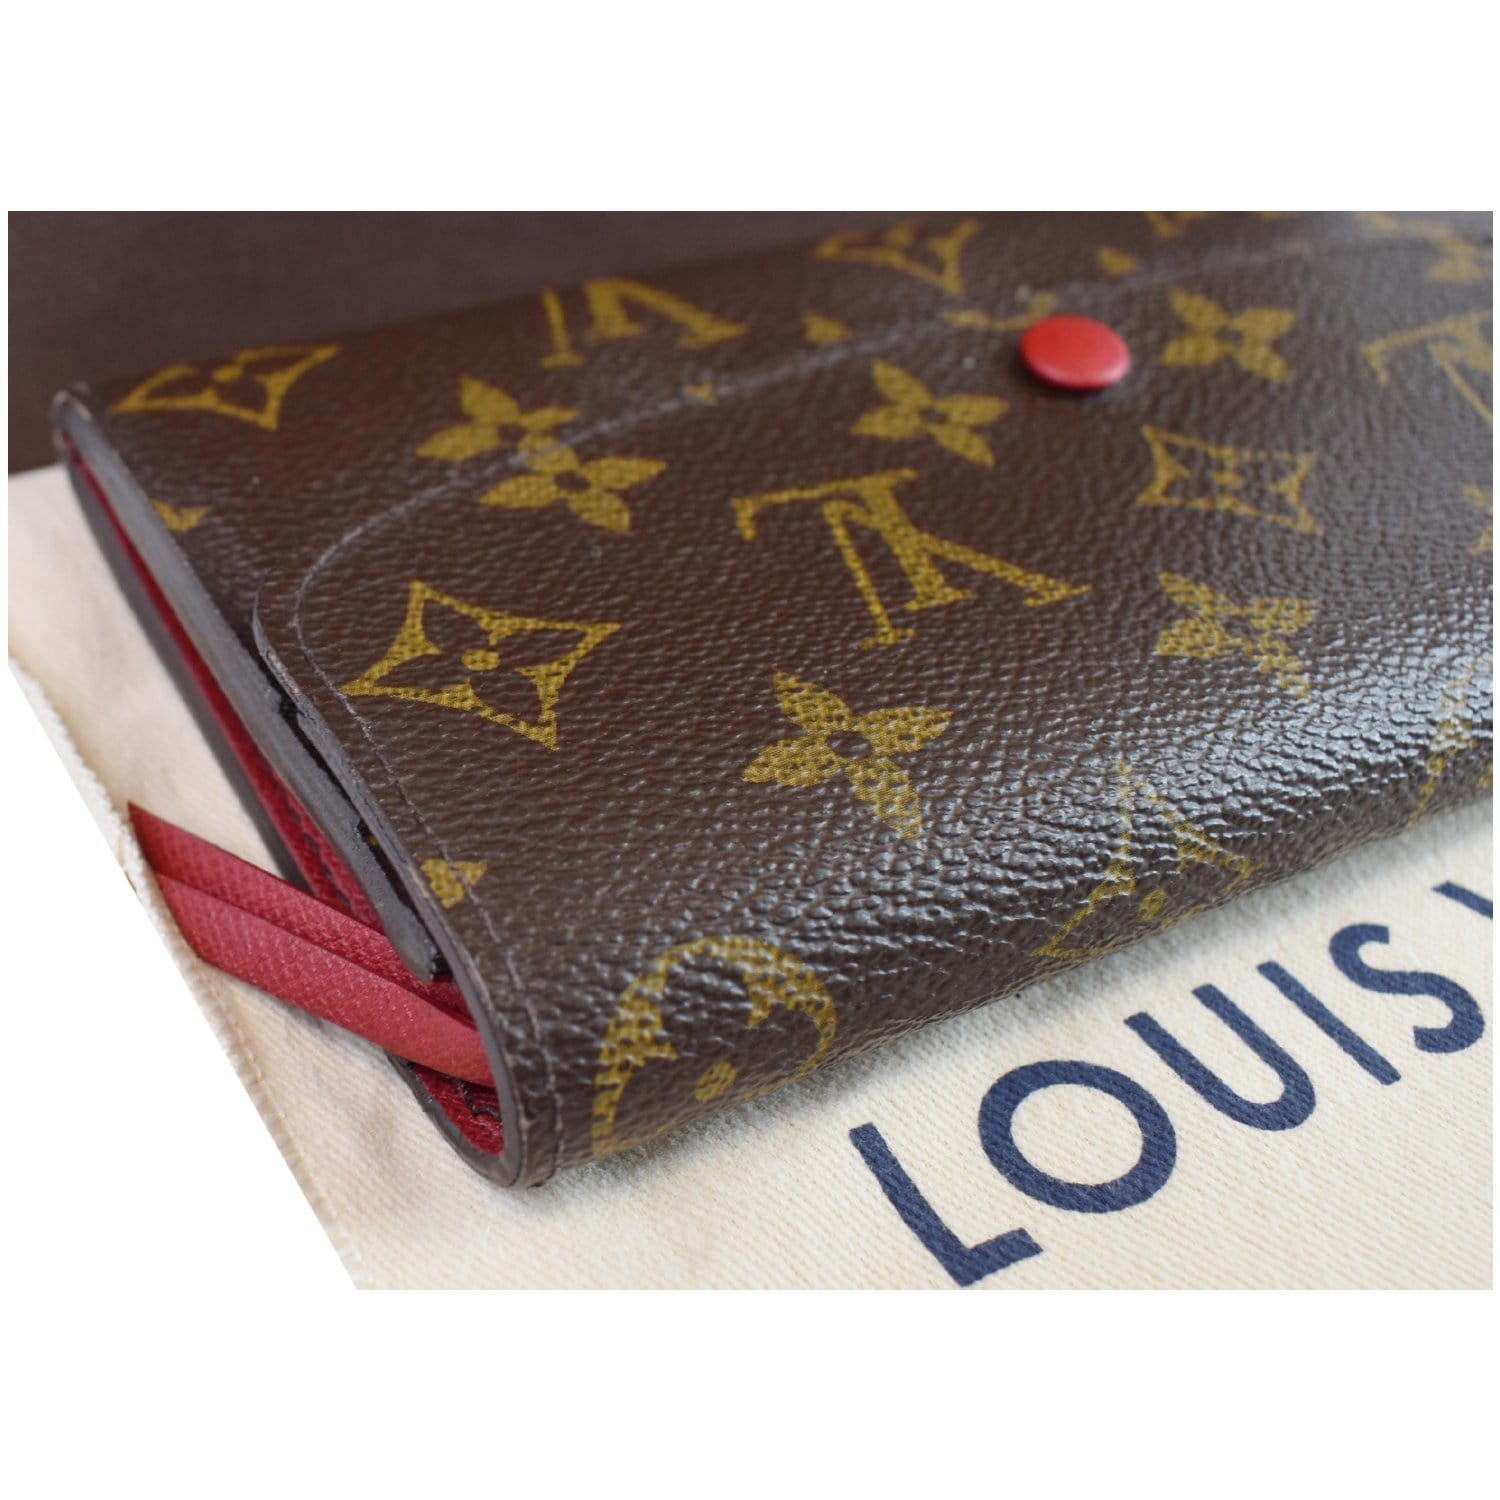 Louis Vuitton Emilie Wallet Monogram Canvas Brown 2325761